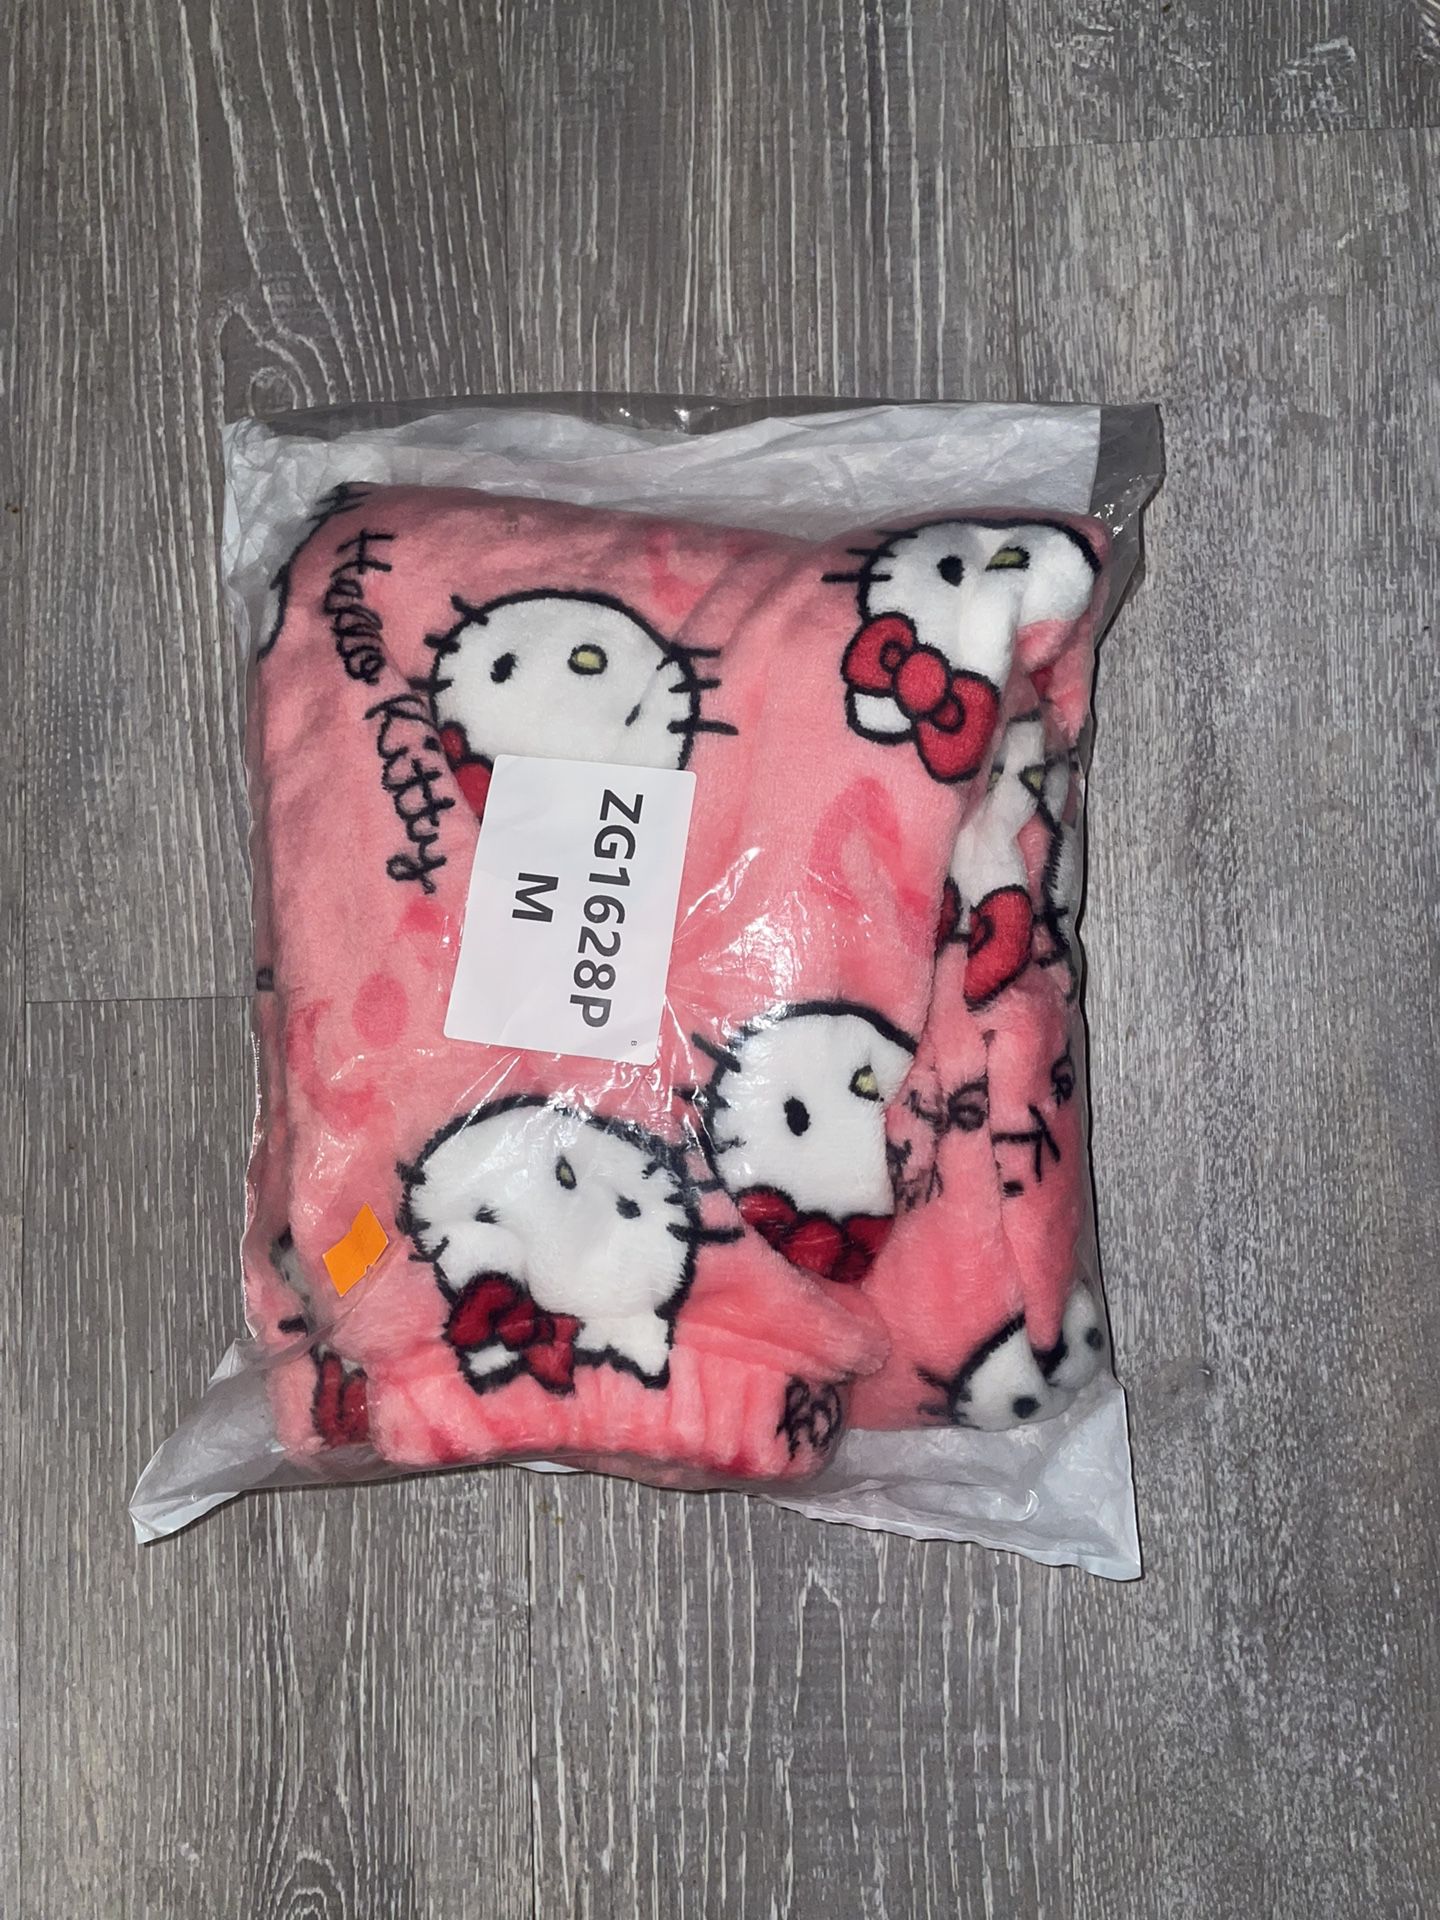 Boys/Girls Hello Kitty Pajamas 